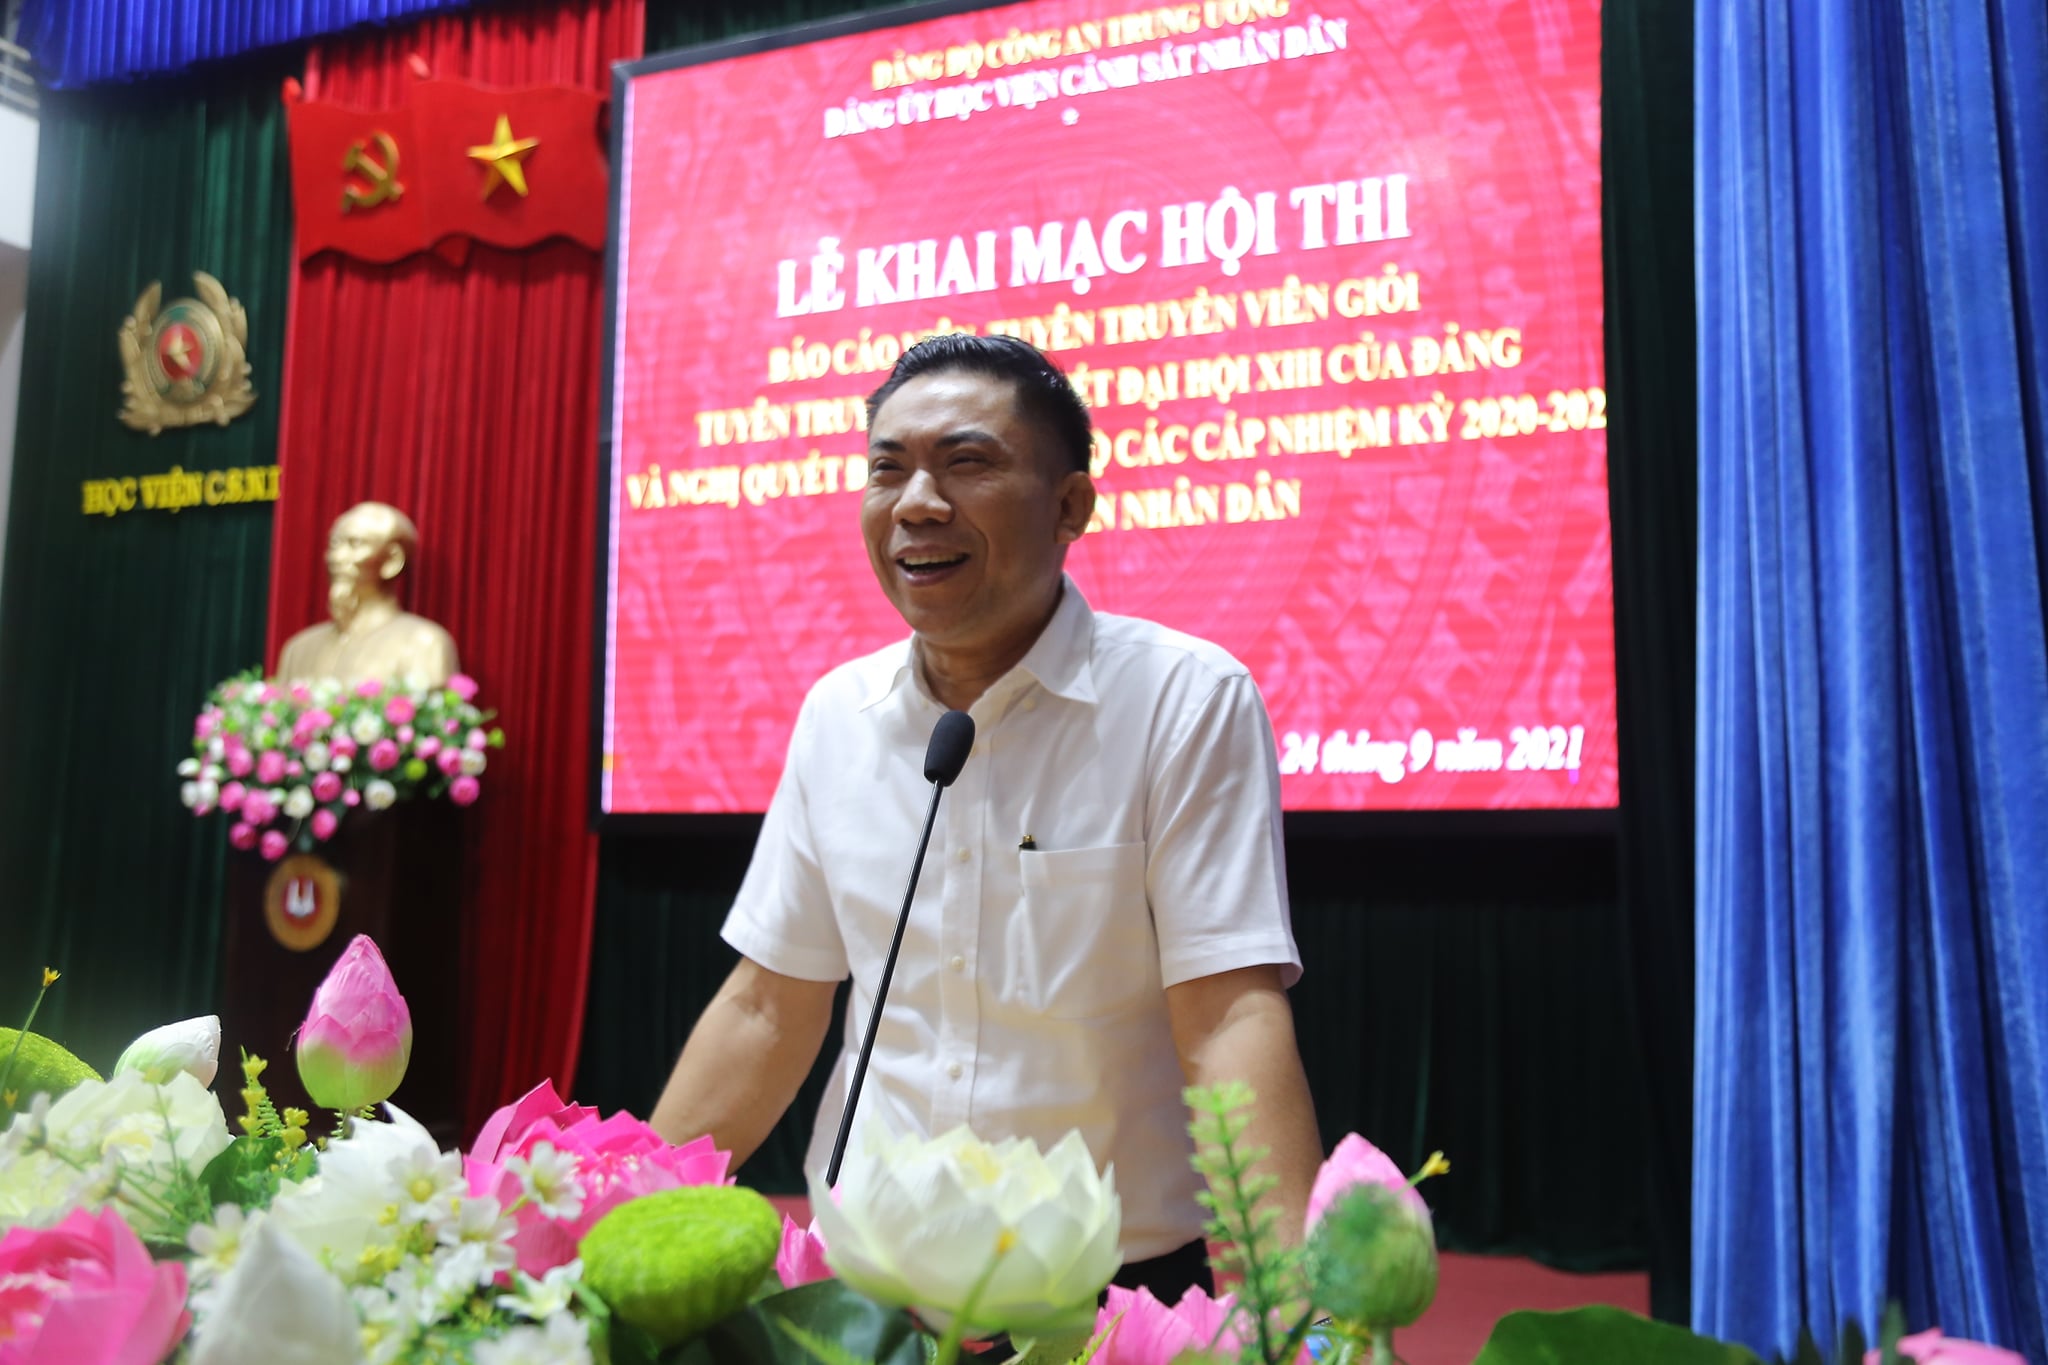 TS Đoàn Văn Báu, Vụ trưởng Vụ Lý luận chính trị, Ban Tuyên giáo Trung ương nhận xét phần dự thi của các thí sinh